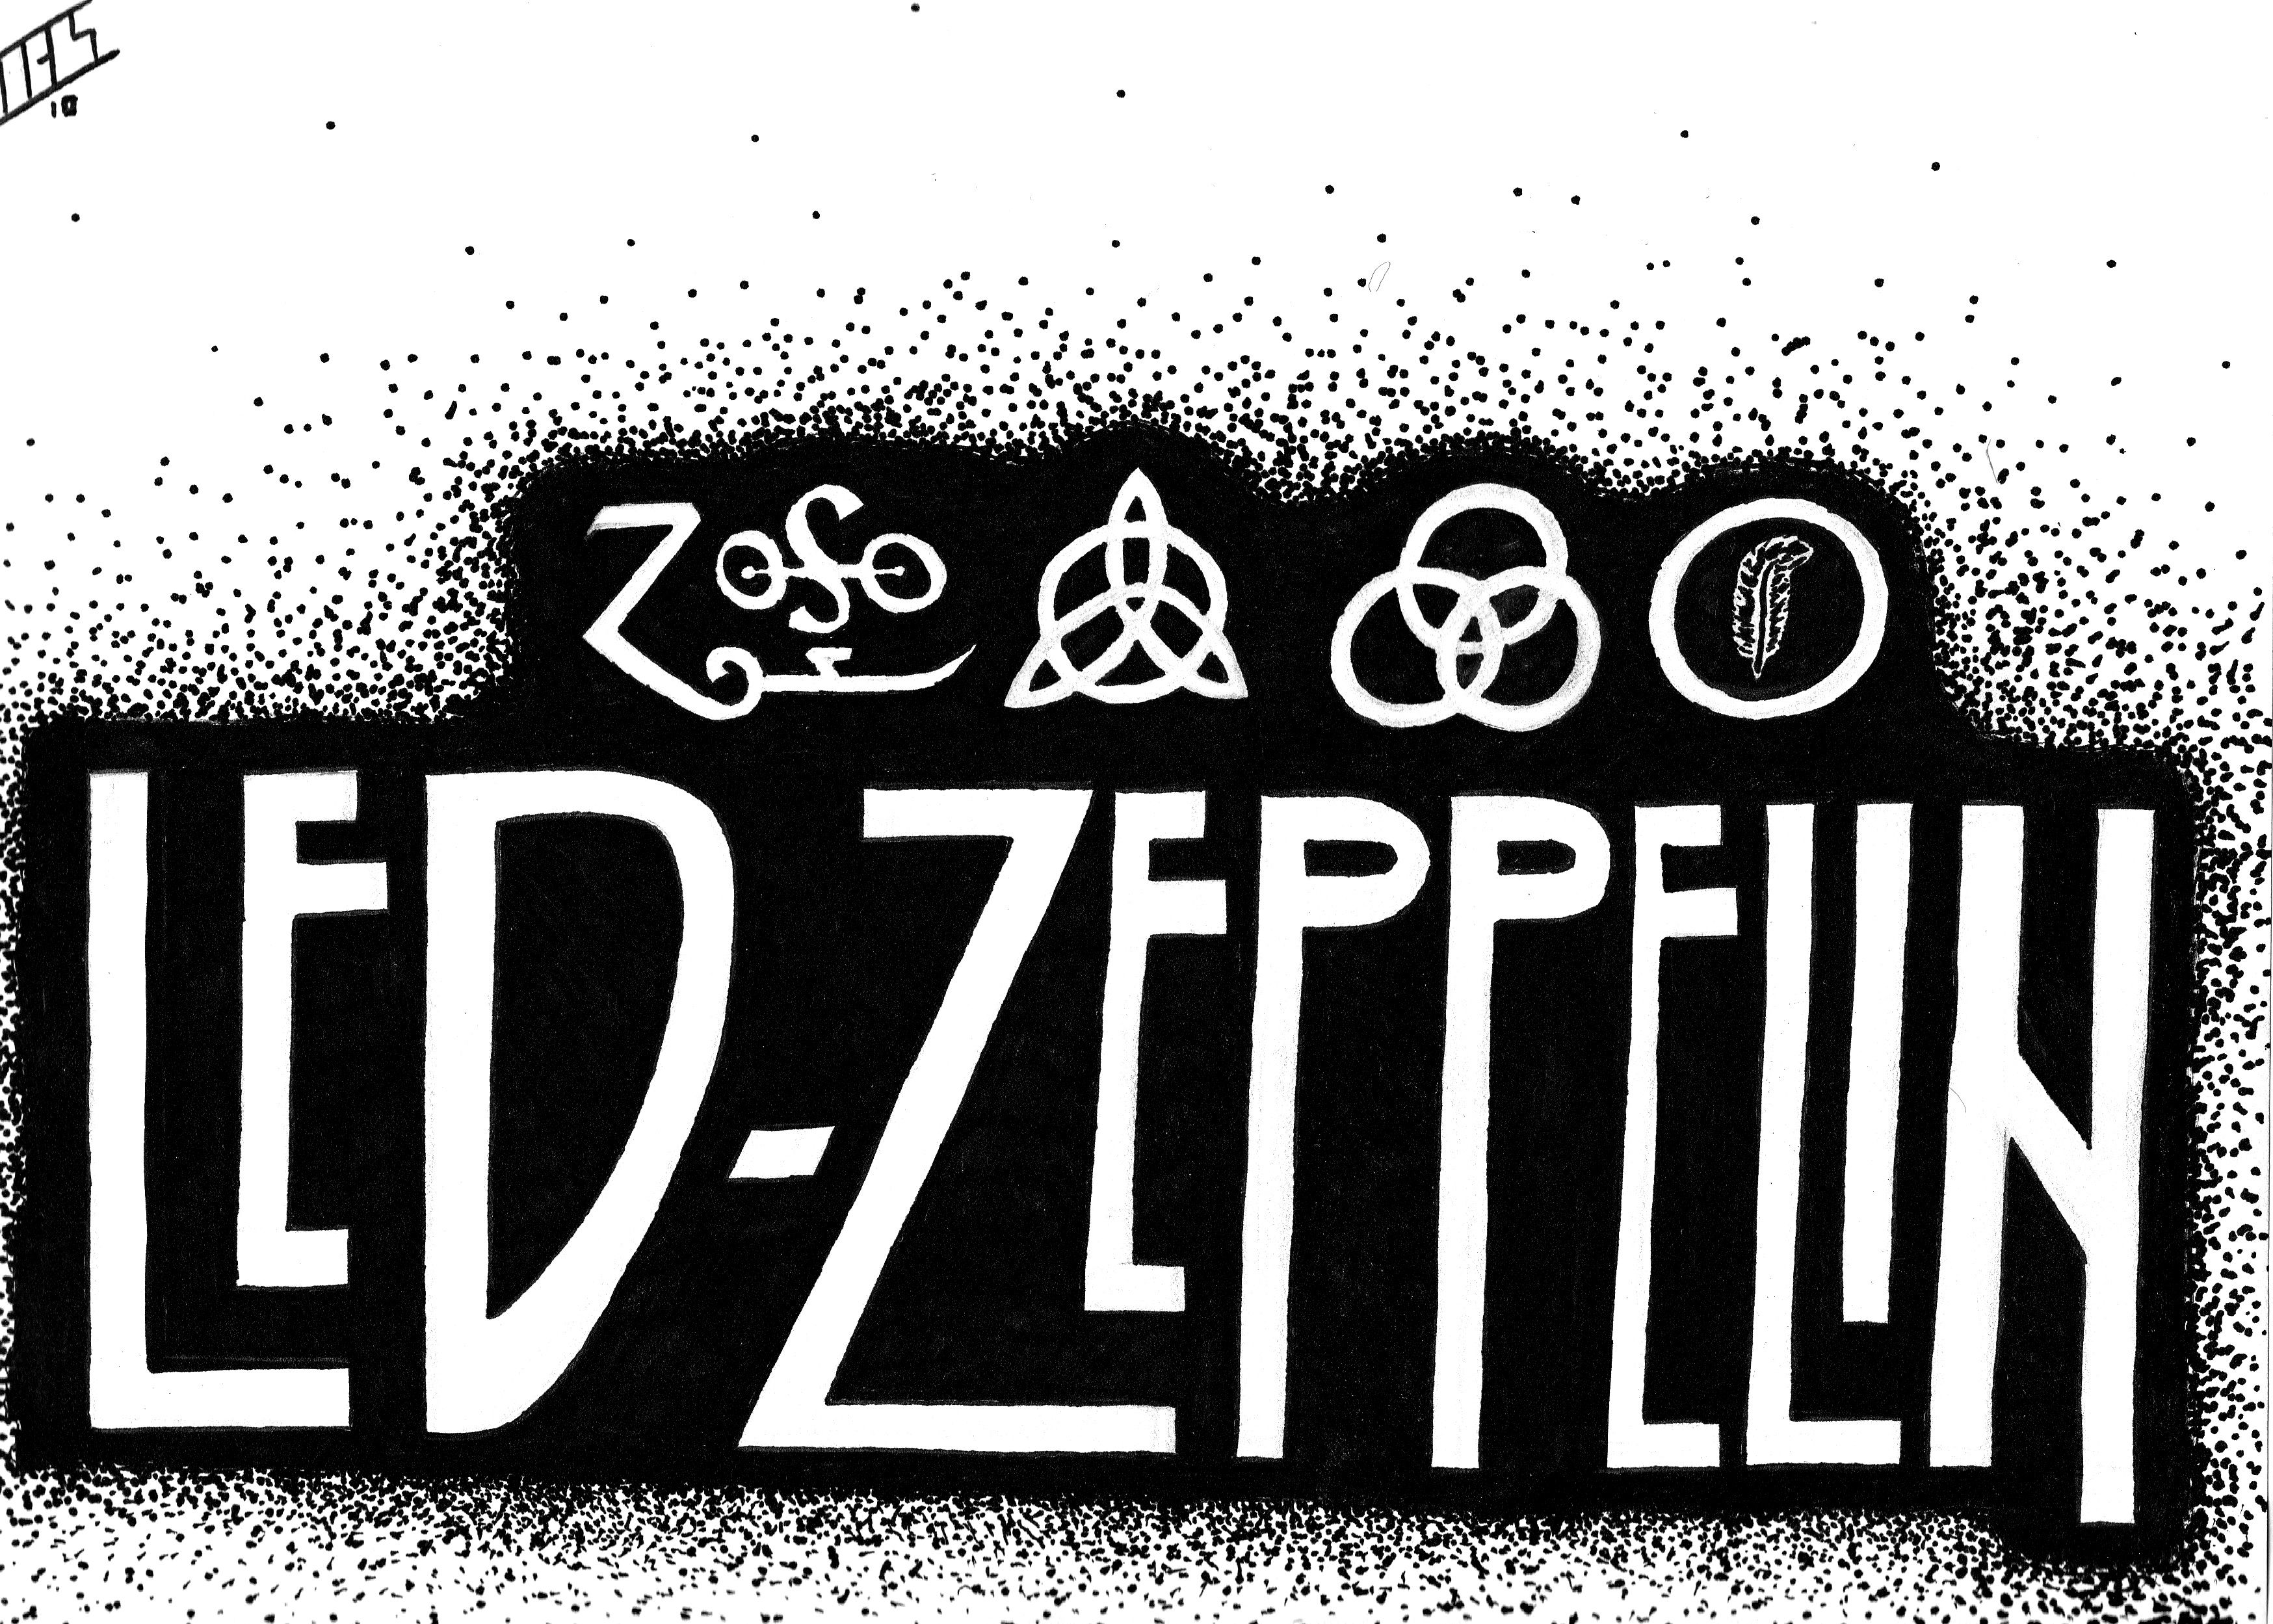 Led Zeppelin Computer Wallpapers, Desktop Backgrounds | 3496x2498 ...